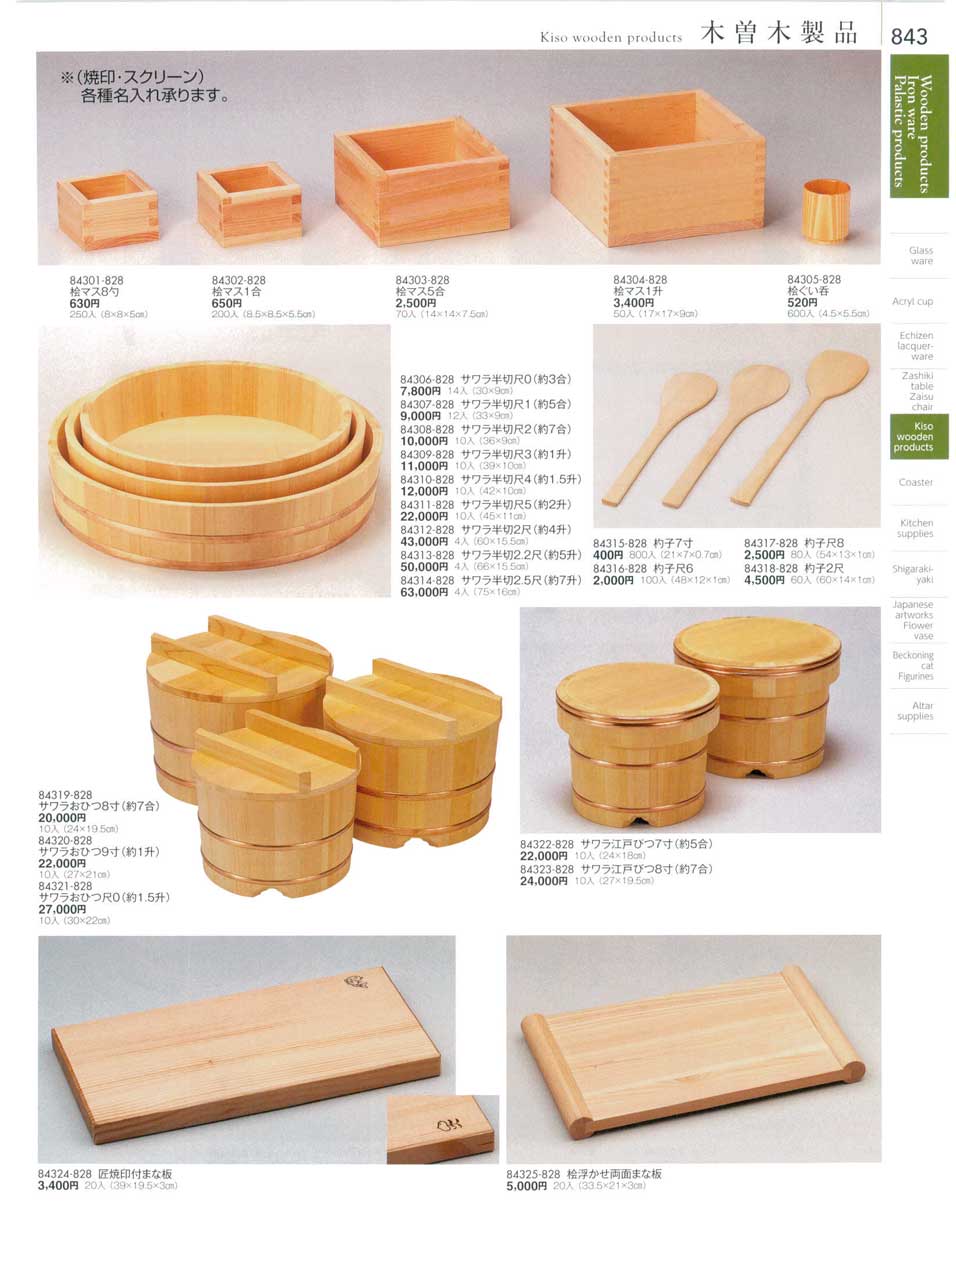 食器 木曽木製品マス・おひつKiso wooden products 陶雅１８－843ページ